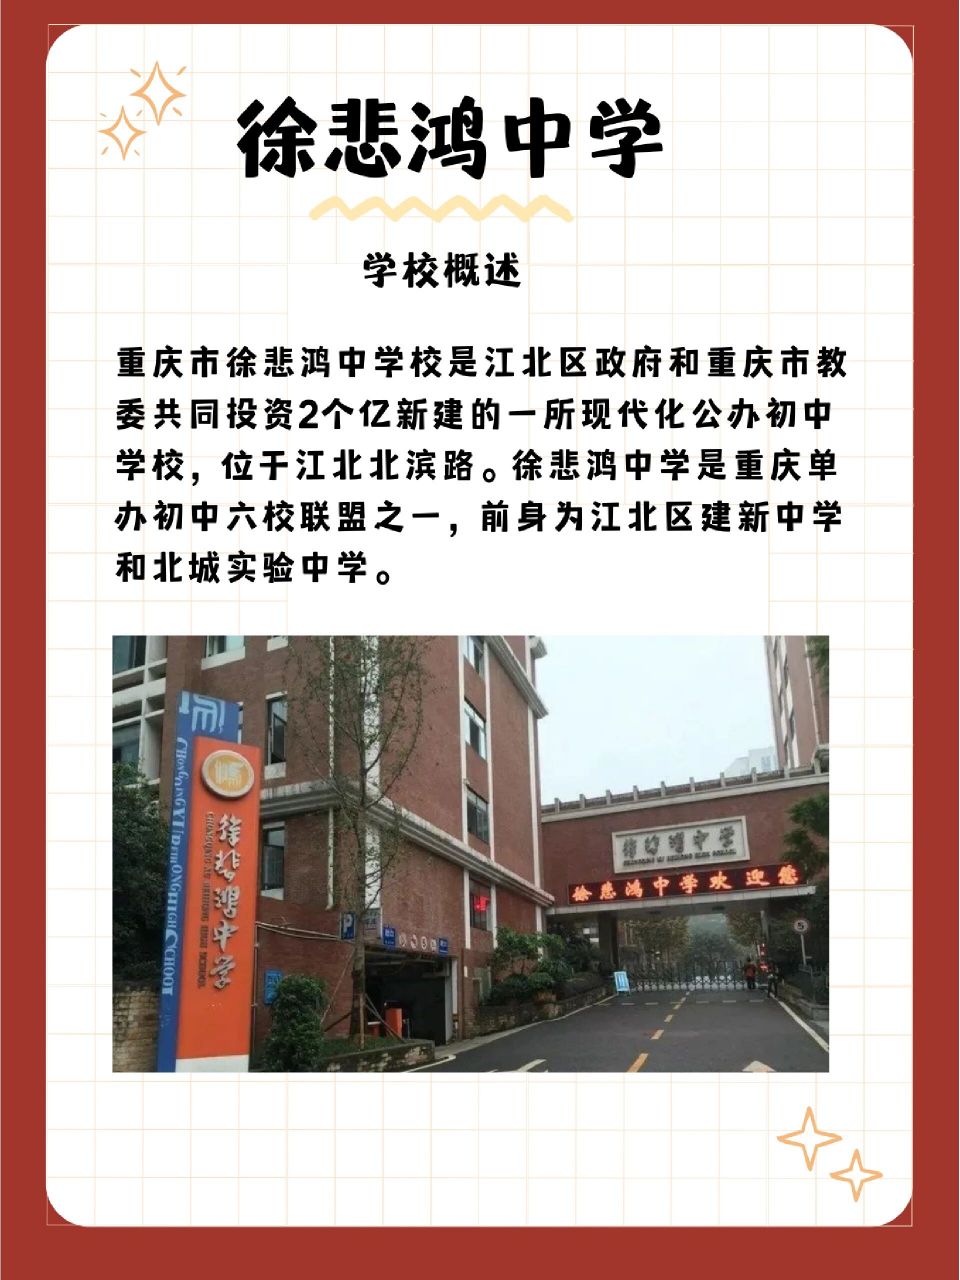 曾是江北区教委重点办好的一所单办初中,2007年建新中学在重庆直辖